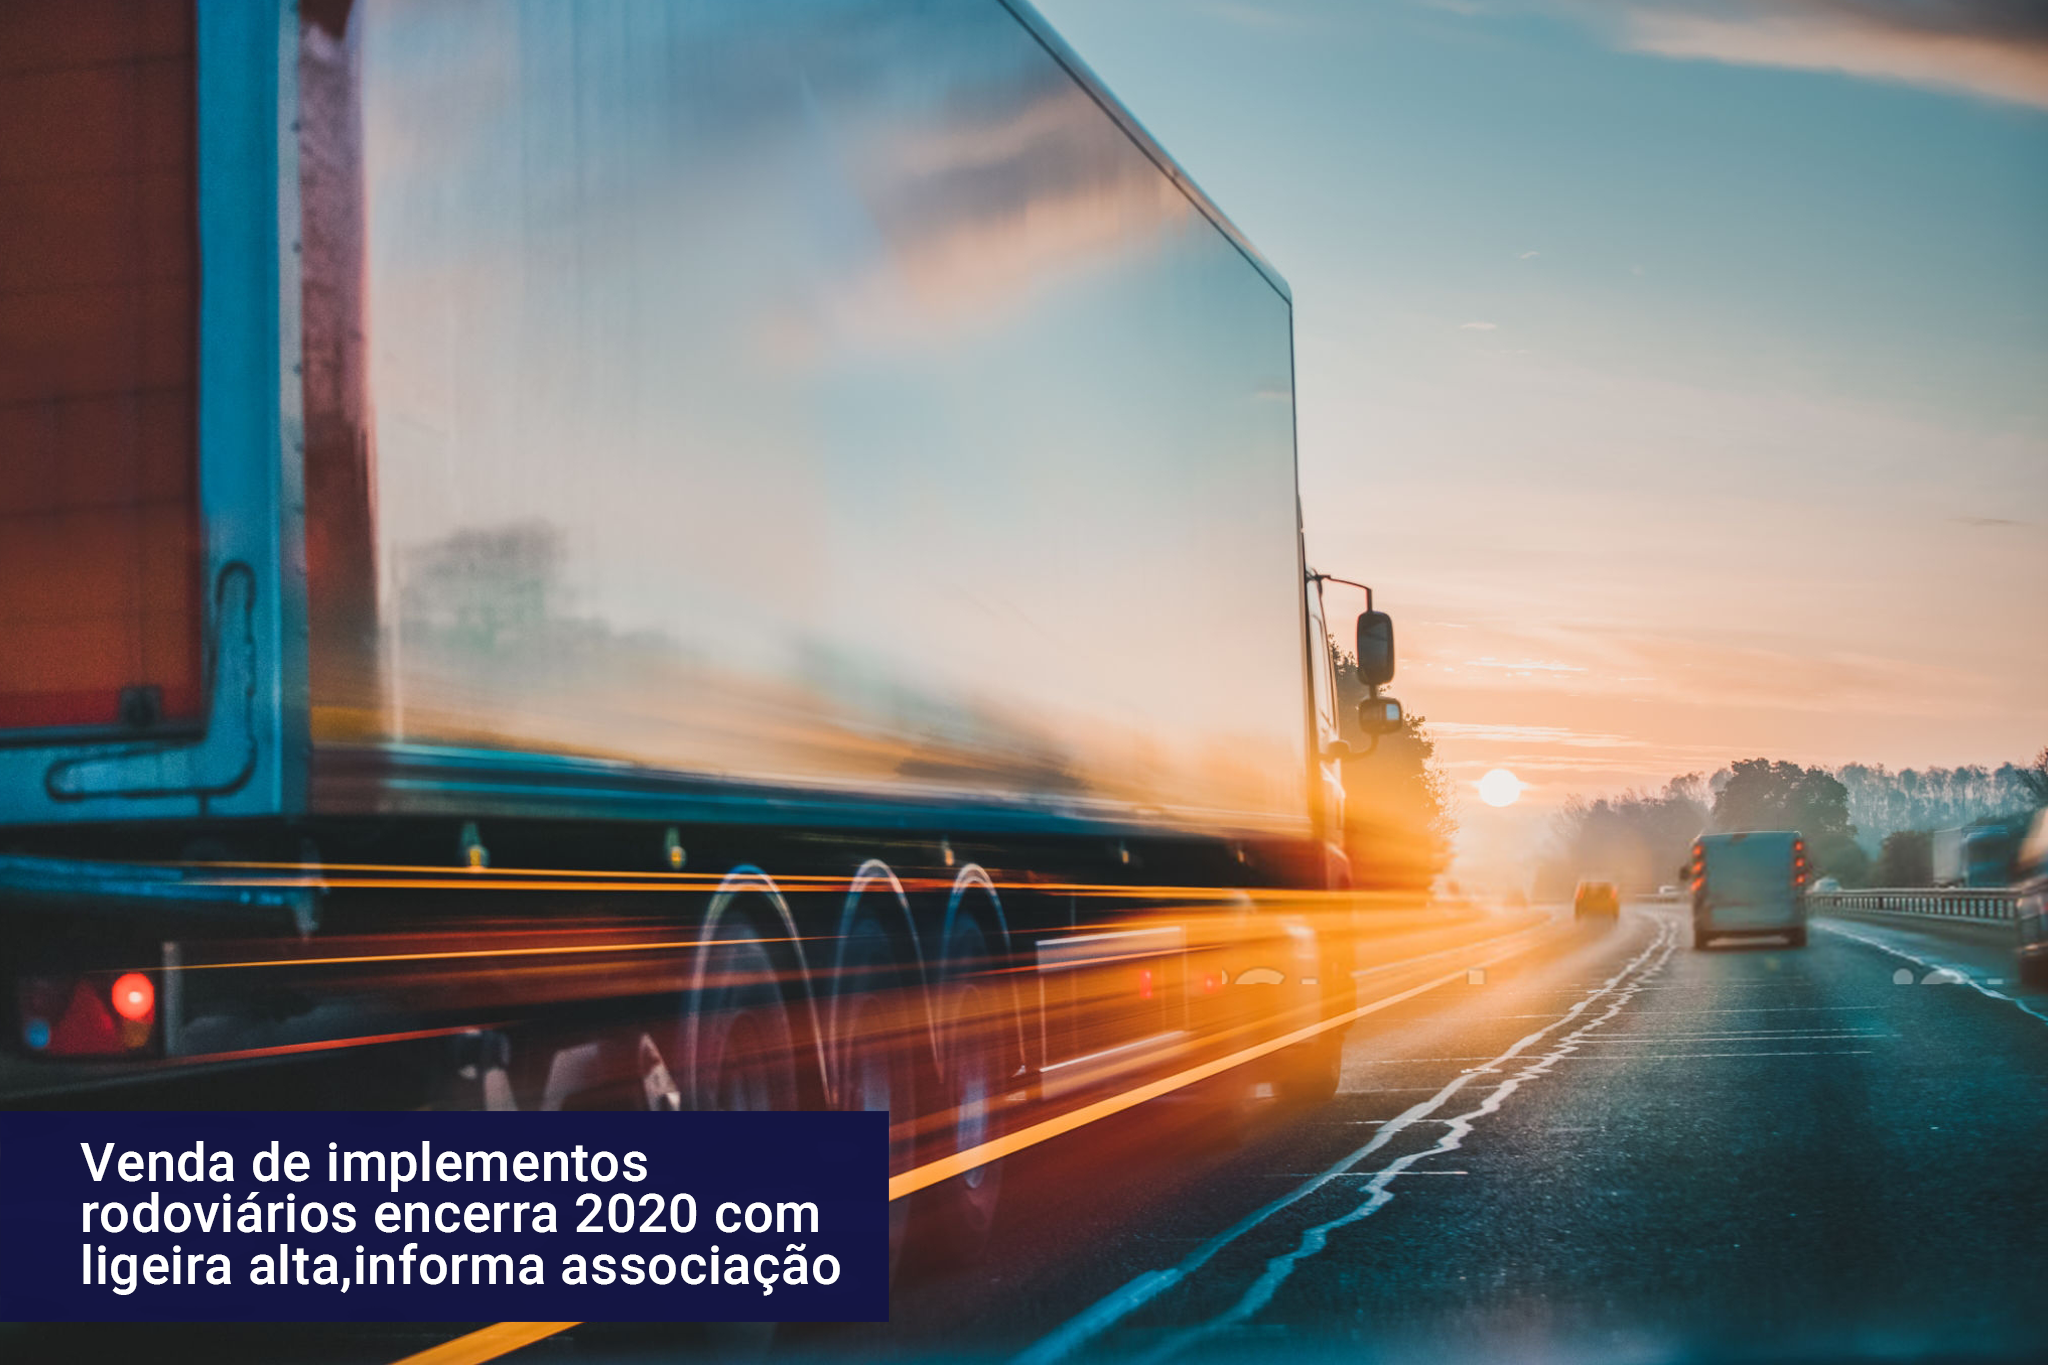 Venda de implementos rodoviários encerra 2020 com ligeira alta, informa associação 